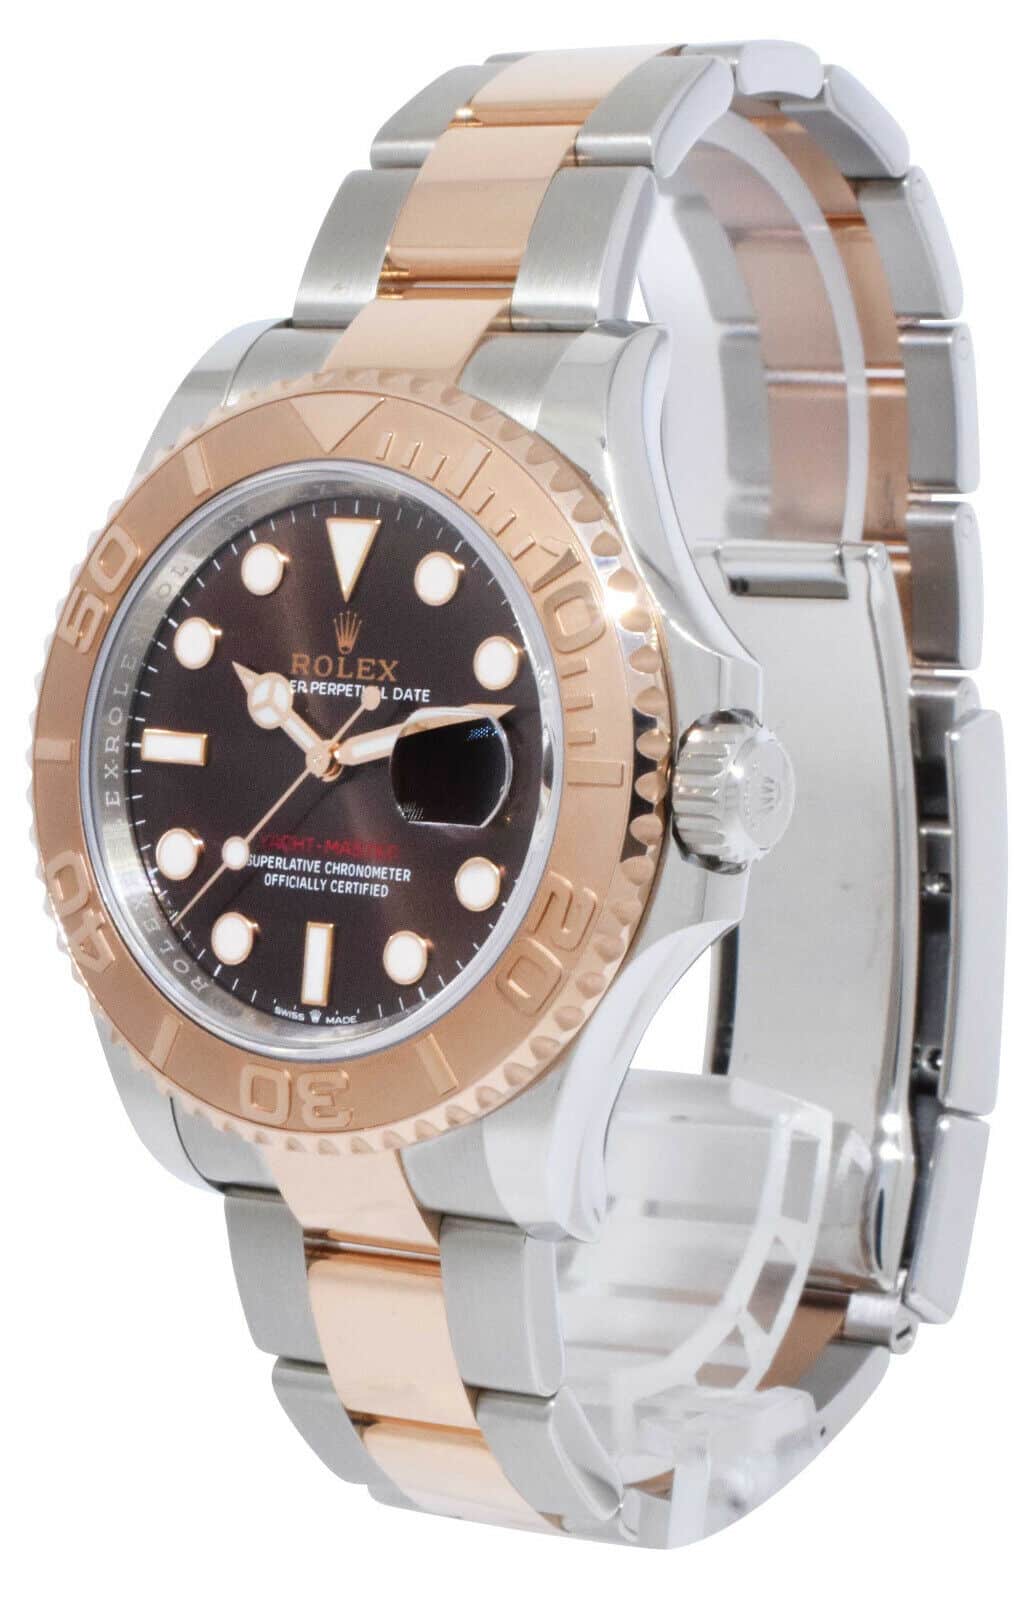 NOS Rolex Yacht-Master 40 18k Rose Gold/Steel Chocolate Watch B/P '22 126621